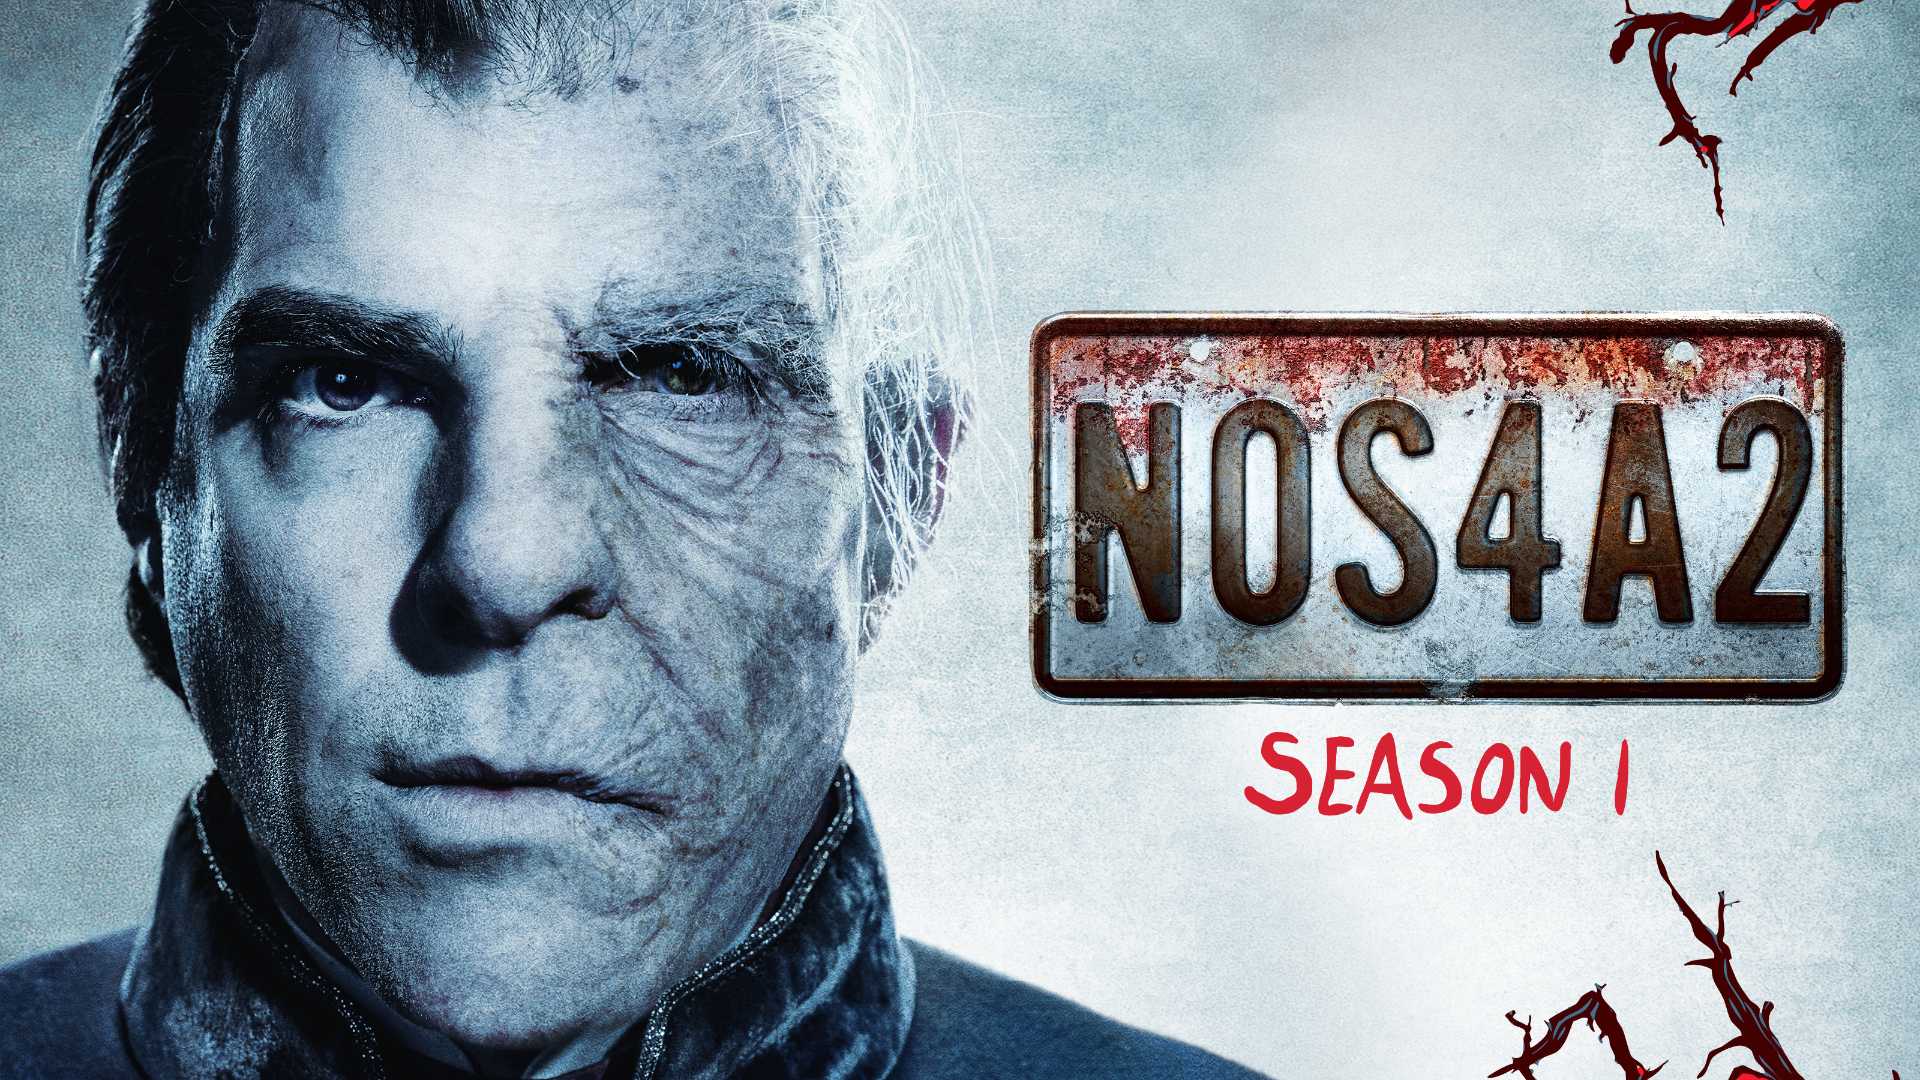 NOS4A2 (2019) 1080p Dual Audio Season 1 S01